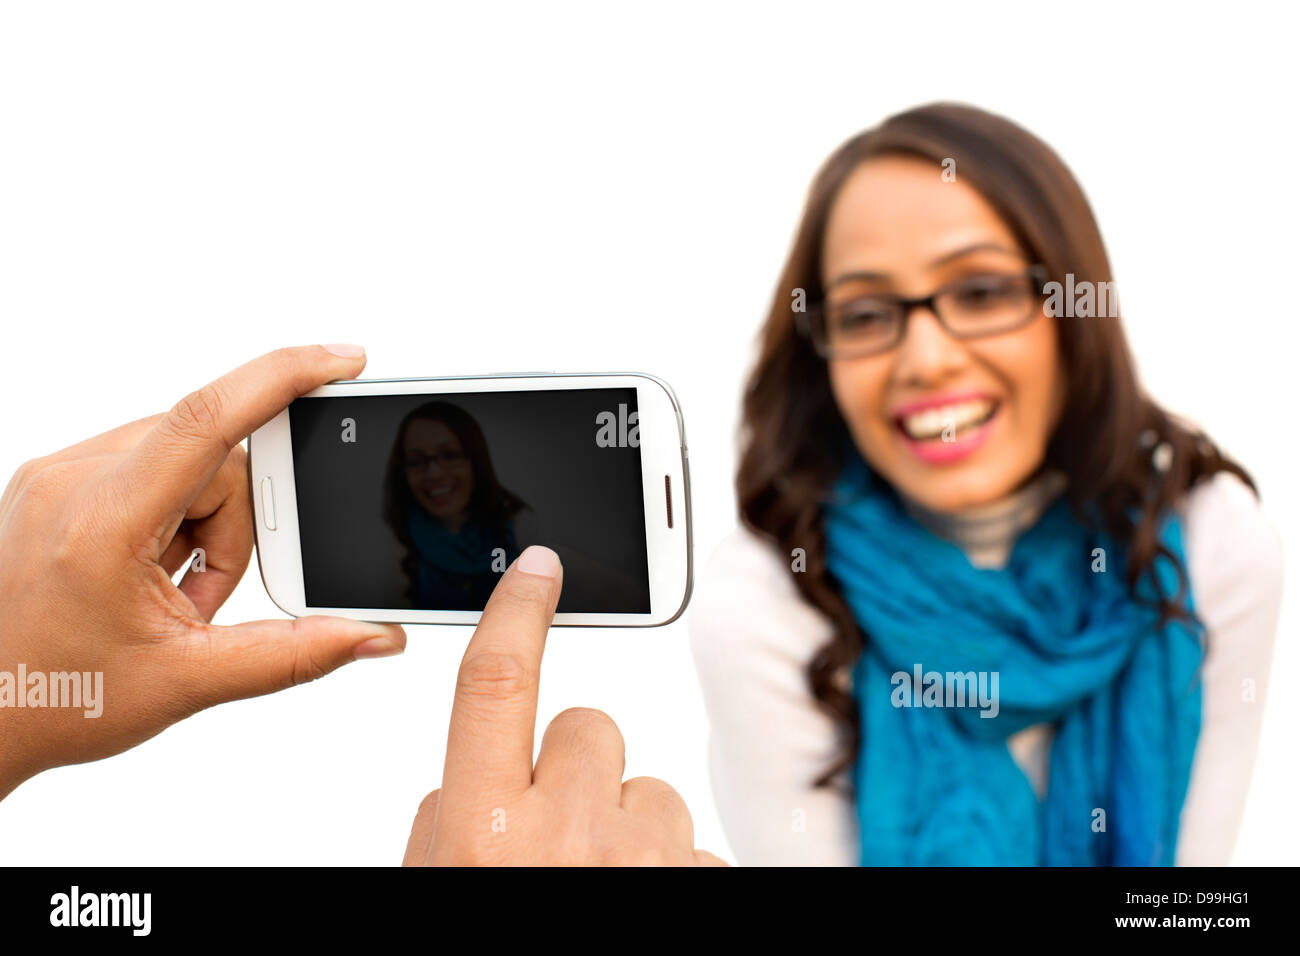 Close-up de la mano de una persona de tomar la foto de una mujer con un teléfono móvil Foto de stock